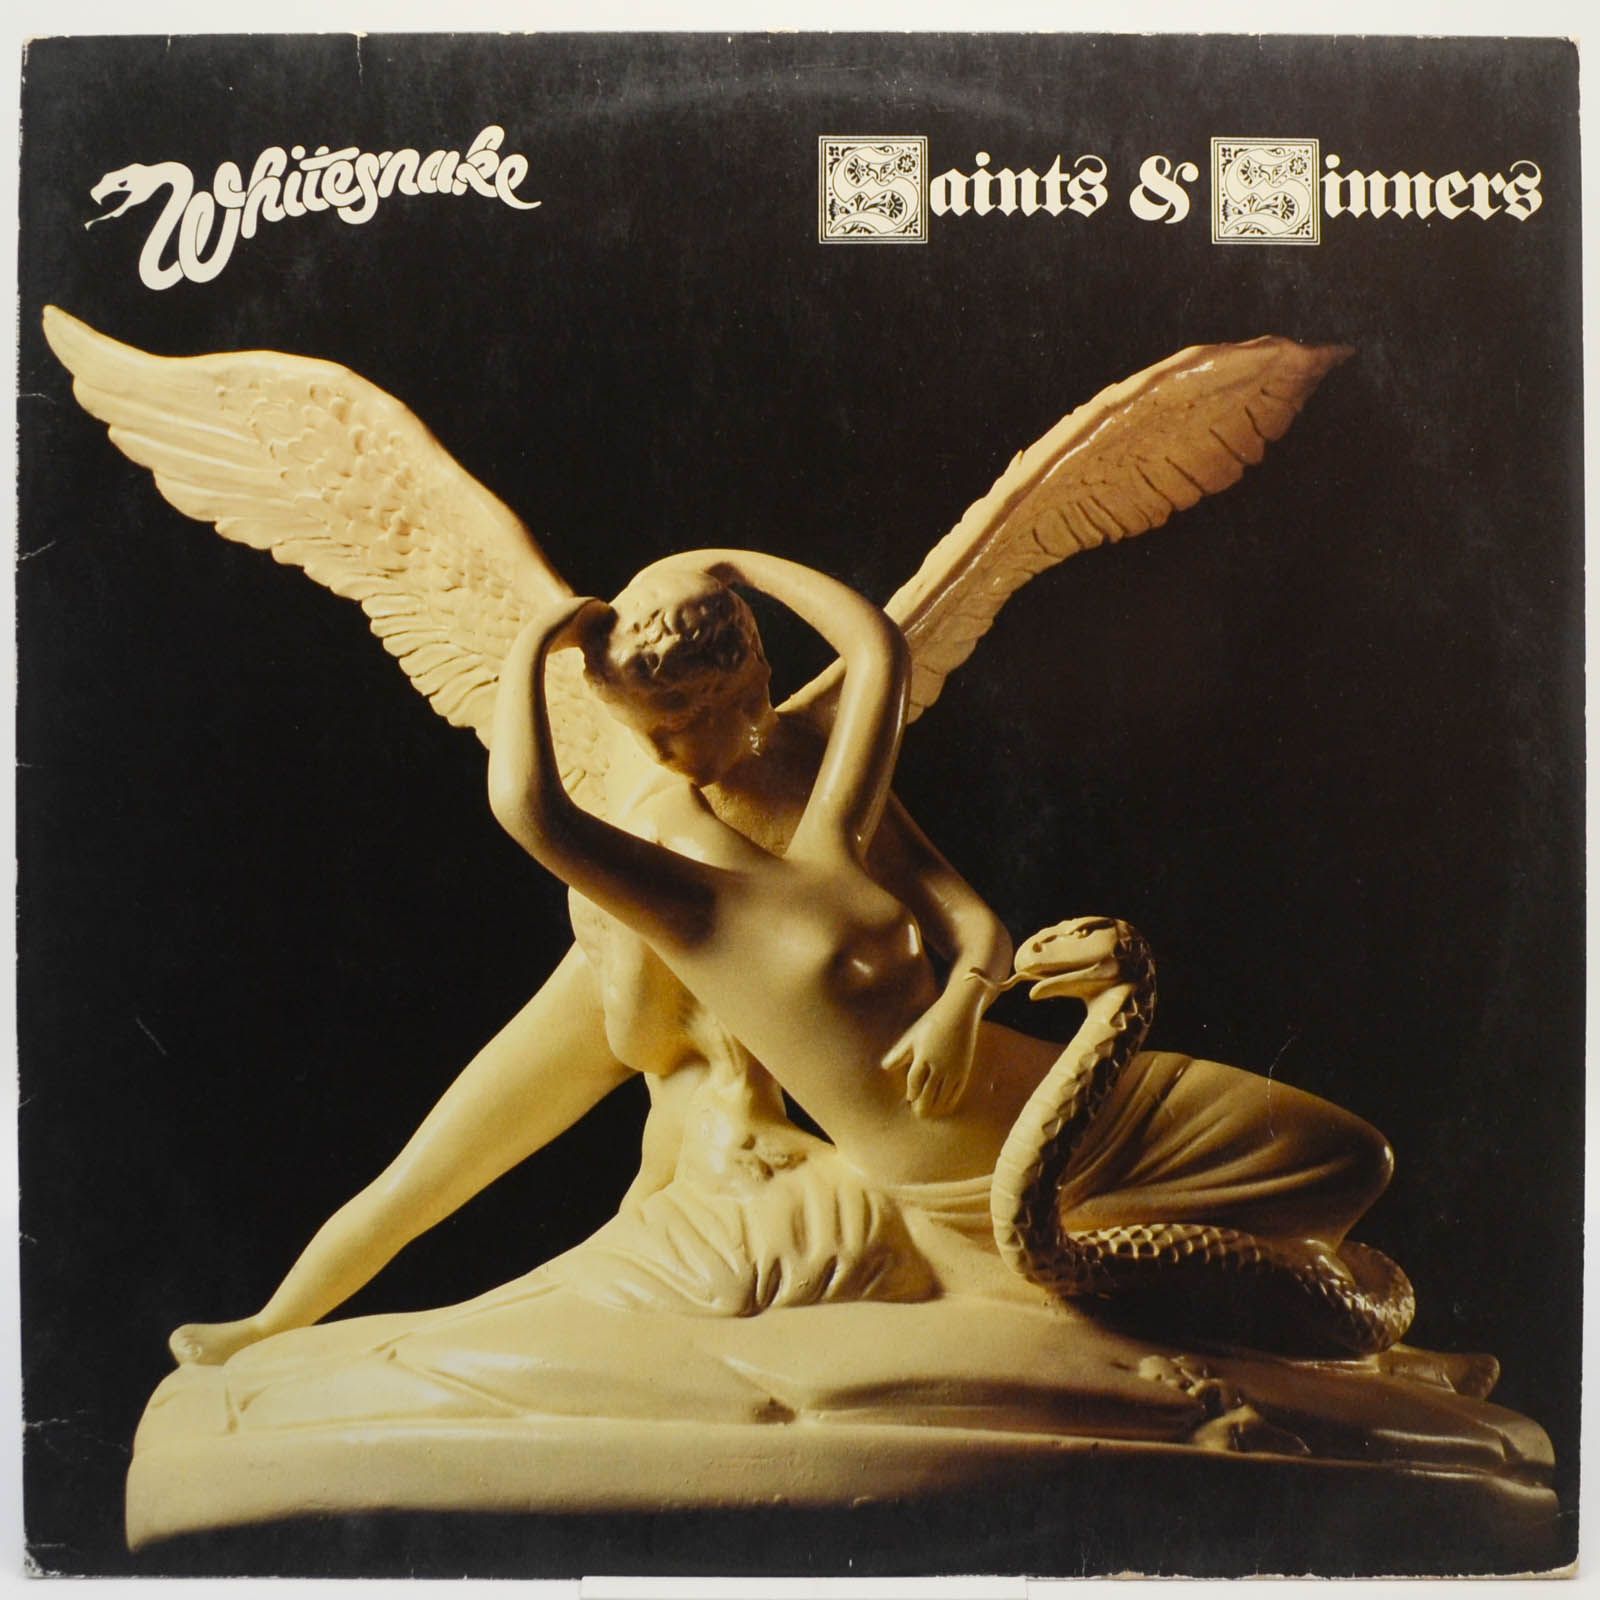 Whitesnake — Saints & Sinners, 1982